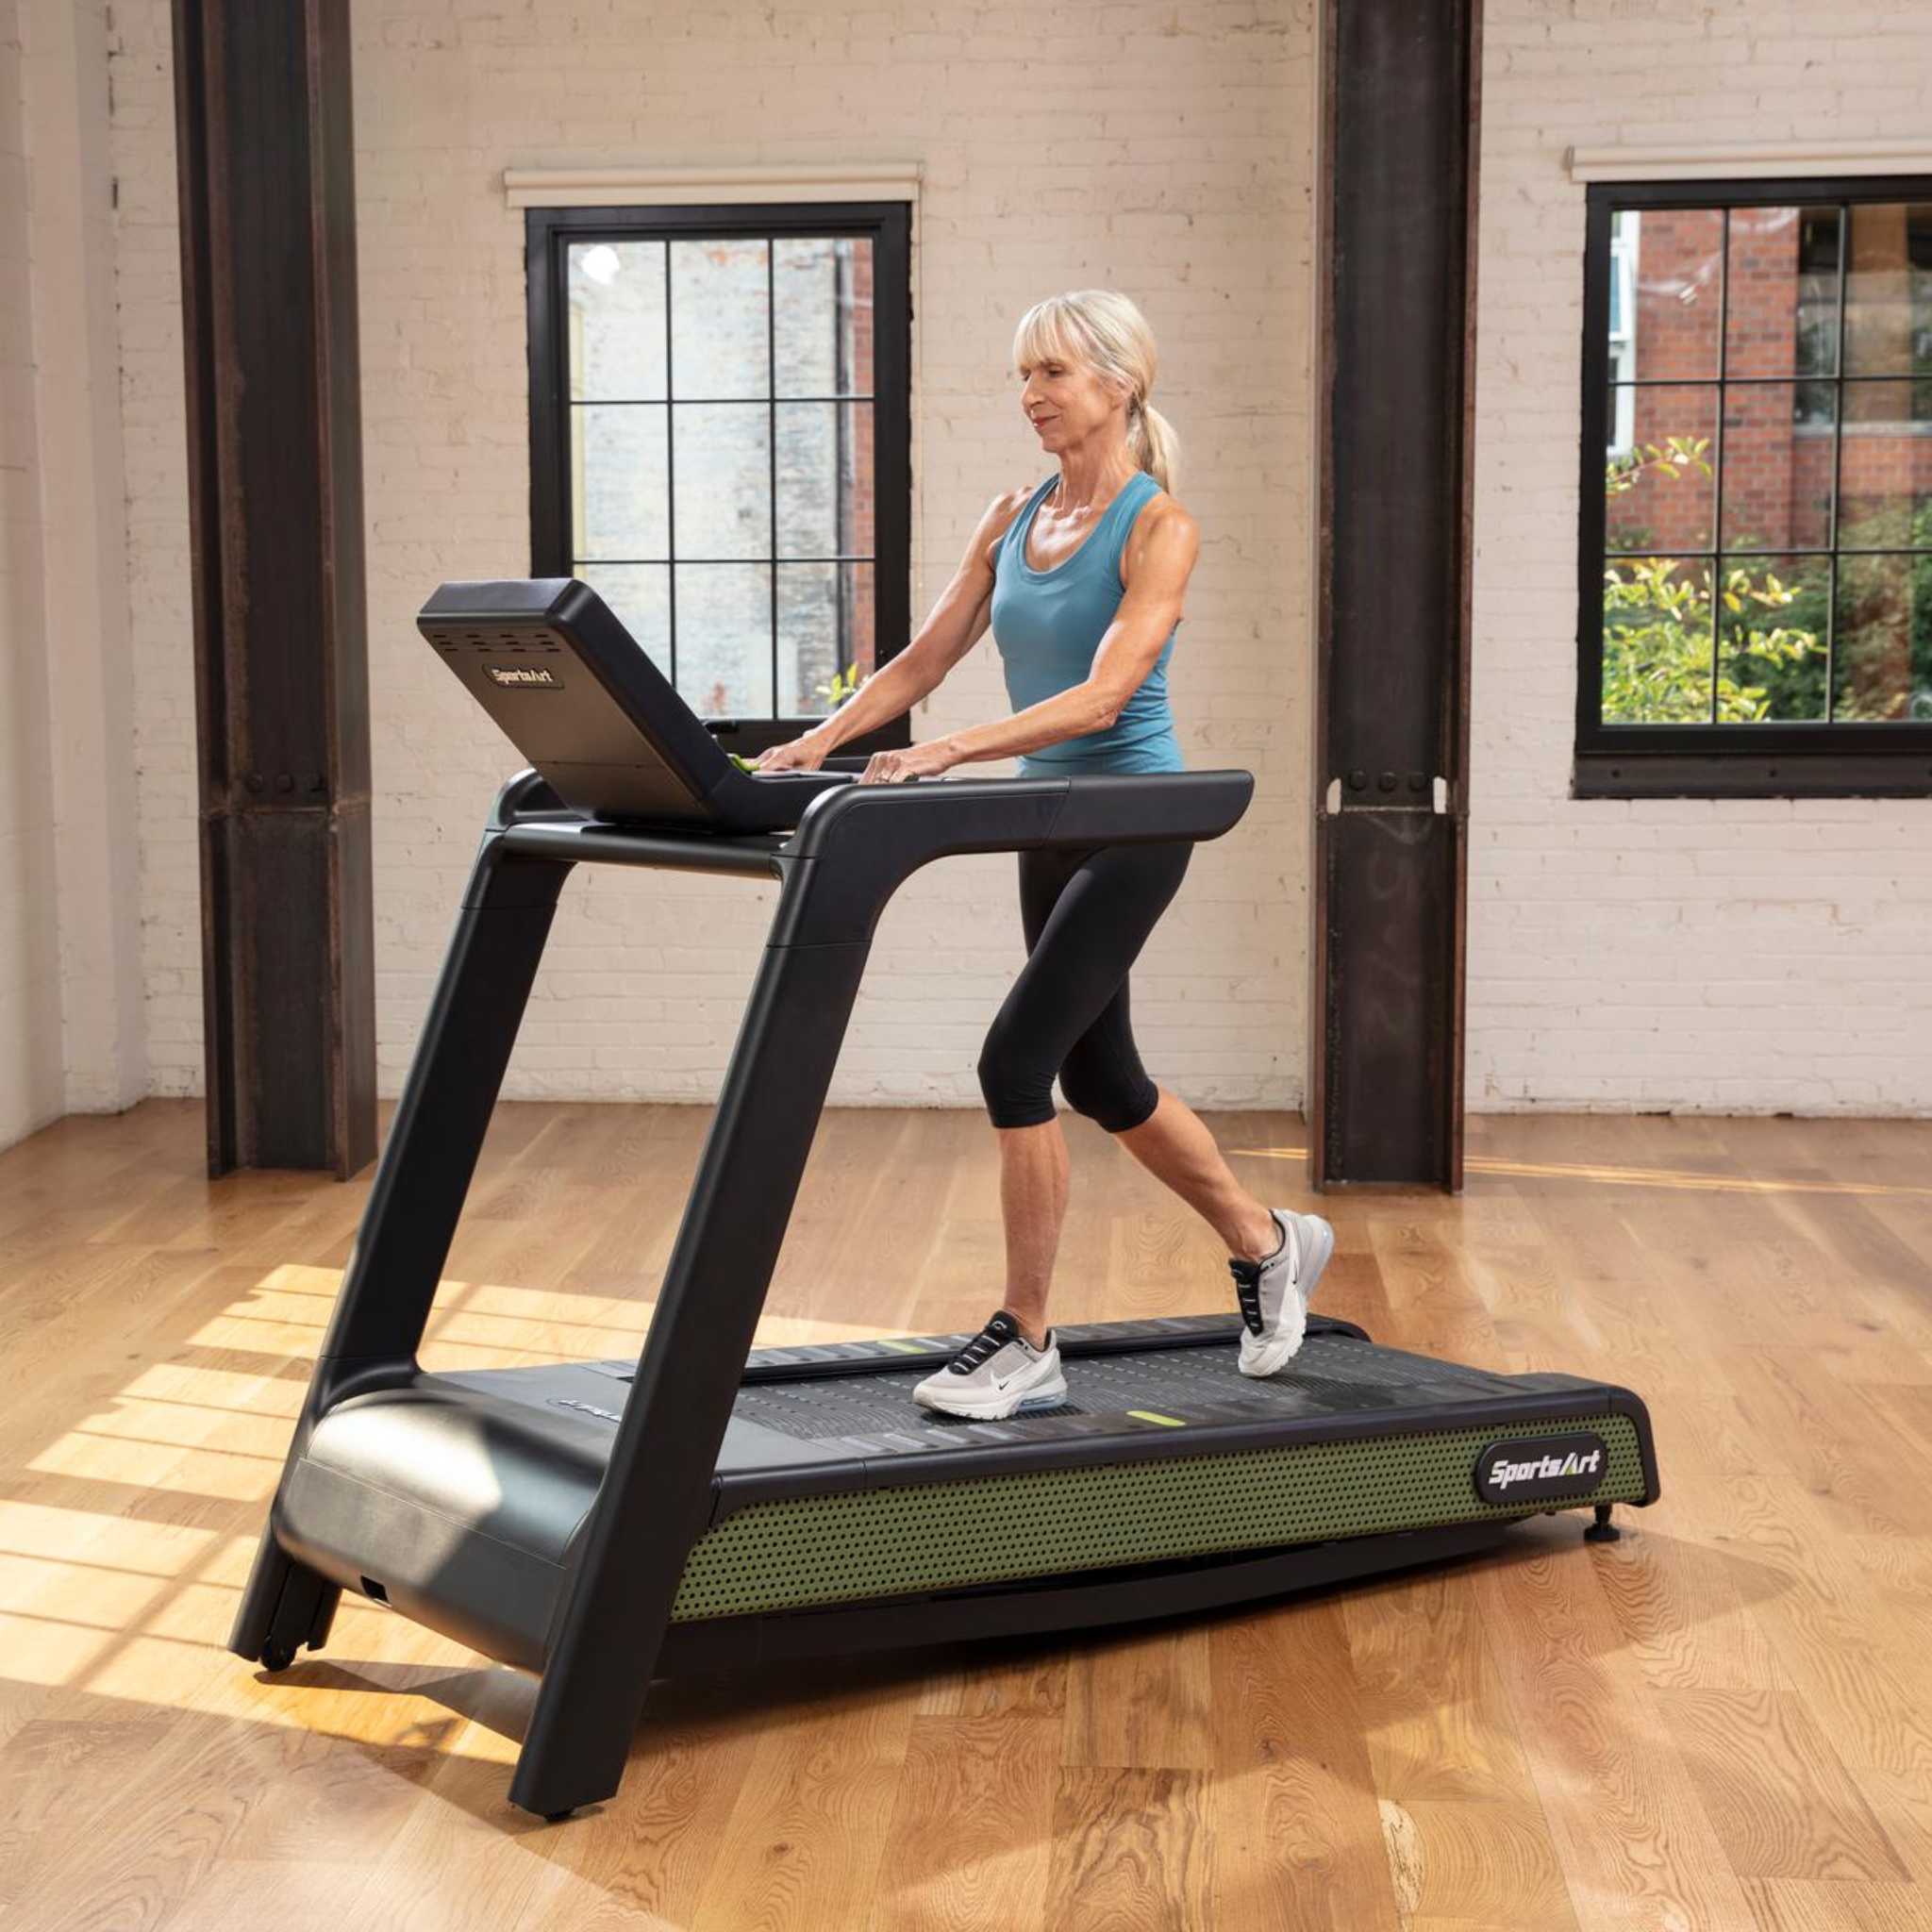 SportsArt G660 Treadmill Female Exercise